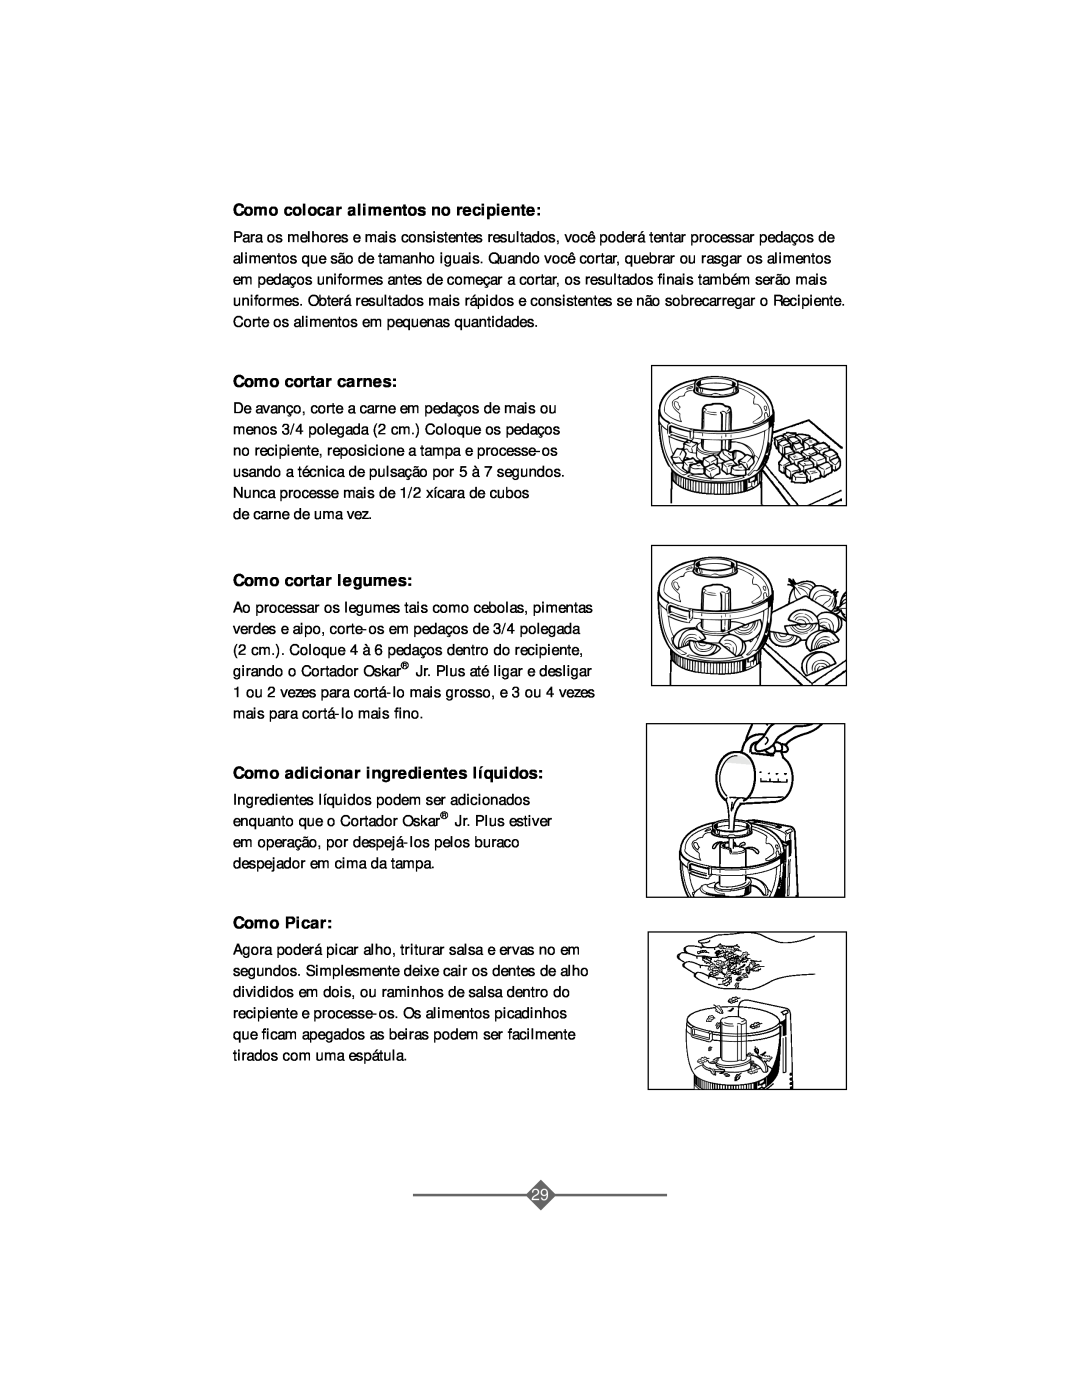 Sunbeam 4816-8 instruction manual Como colocar alimentos no recipiente, Como cortar carnes, Como cortar legumes, Como Picar 